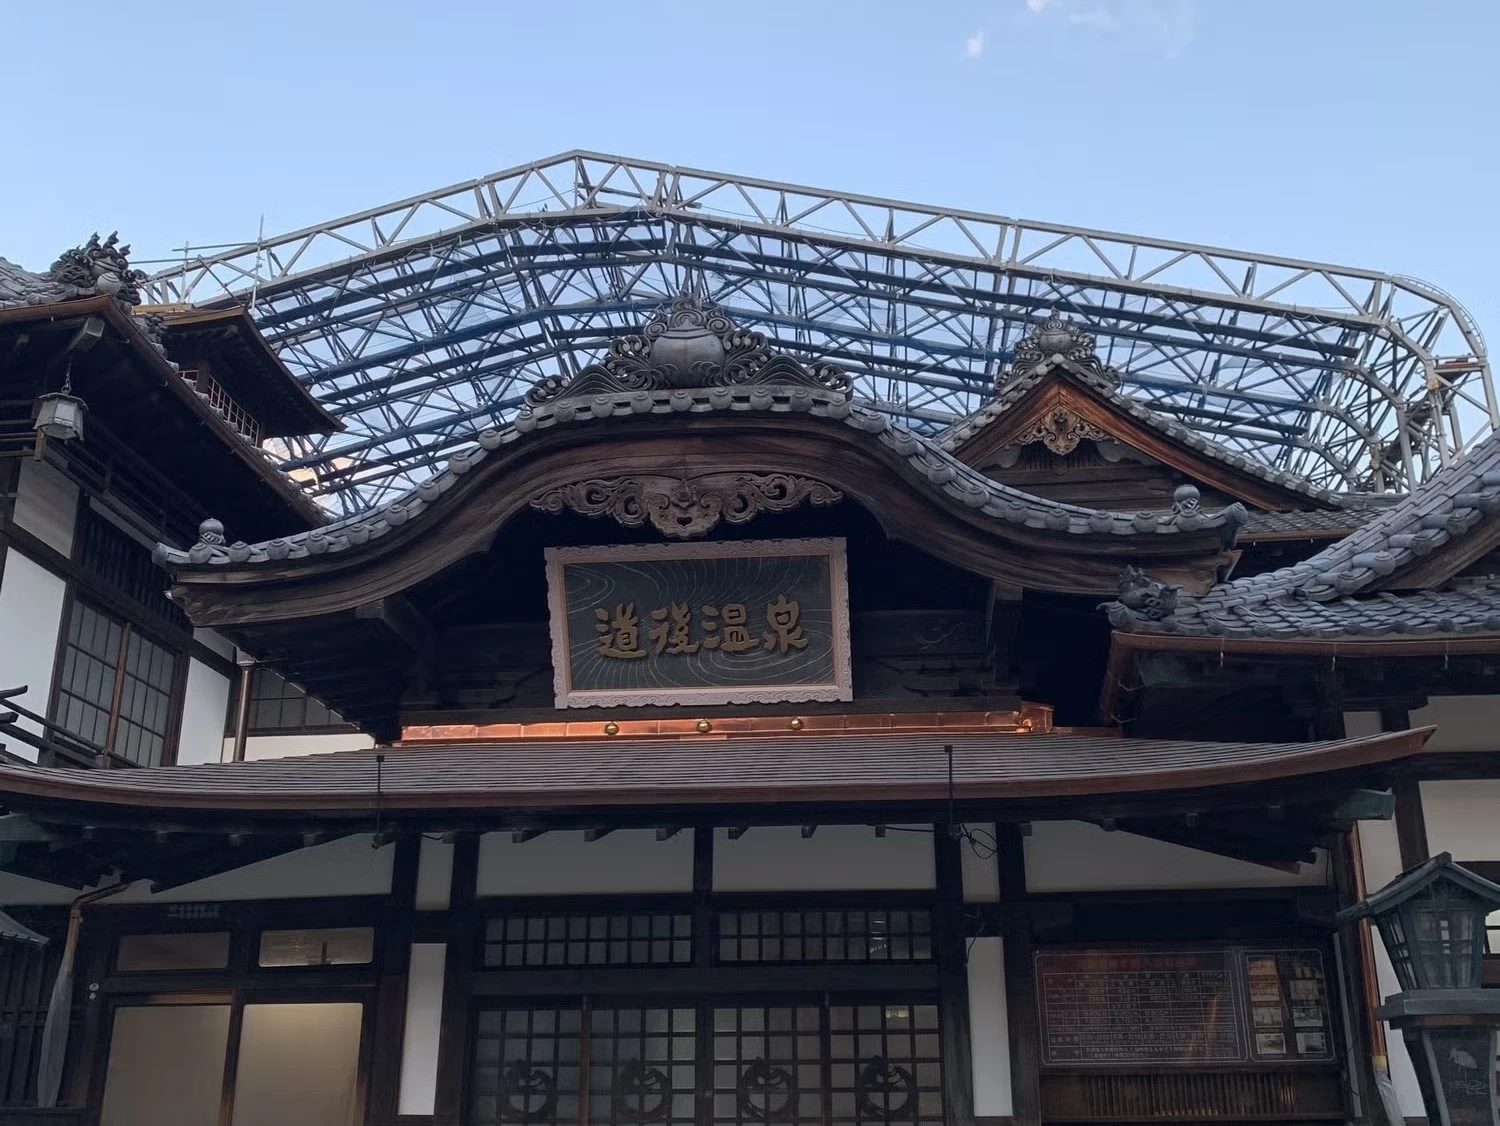 日本最古の温泉地・道後へ！ 魅力あふれる温泉街を大満喫する旅のススメ